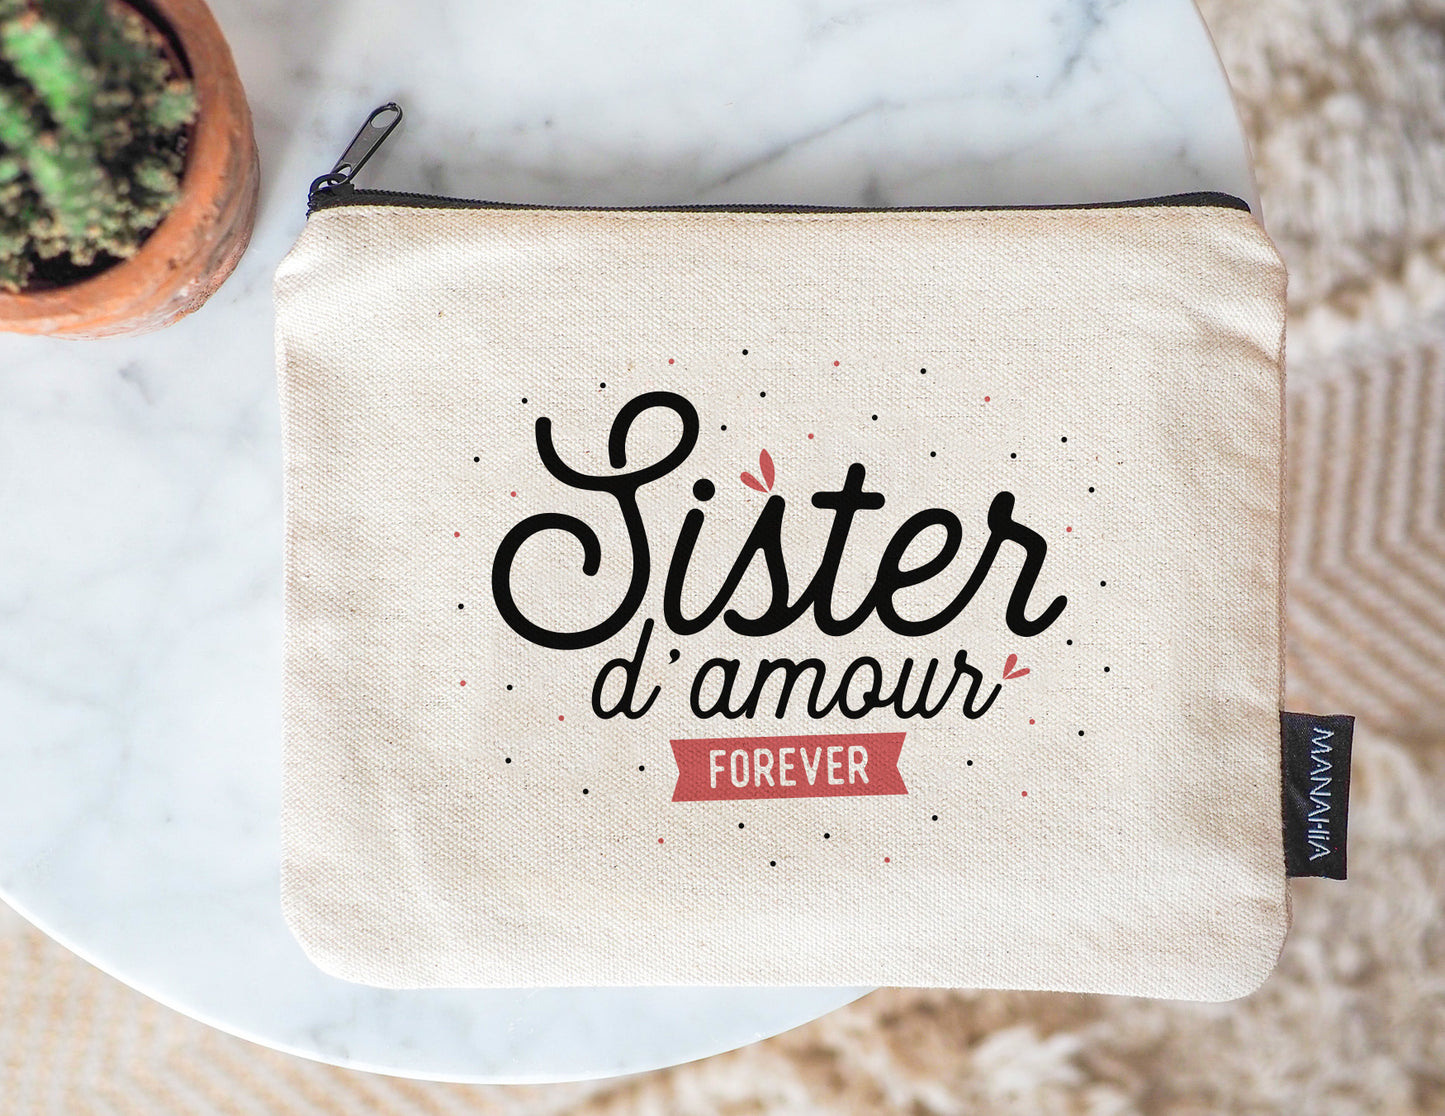 Pochette Sister d'amour forever